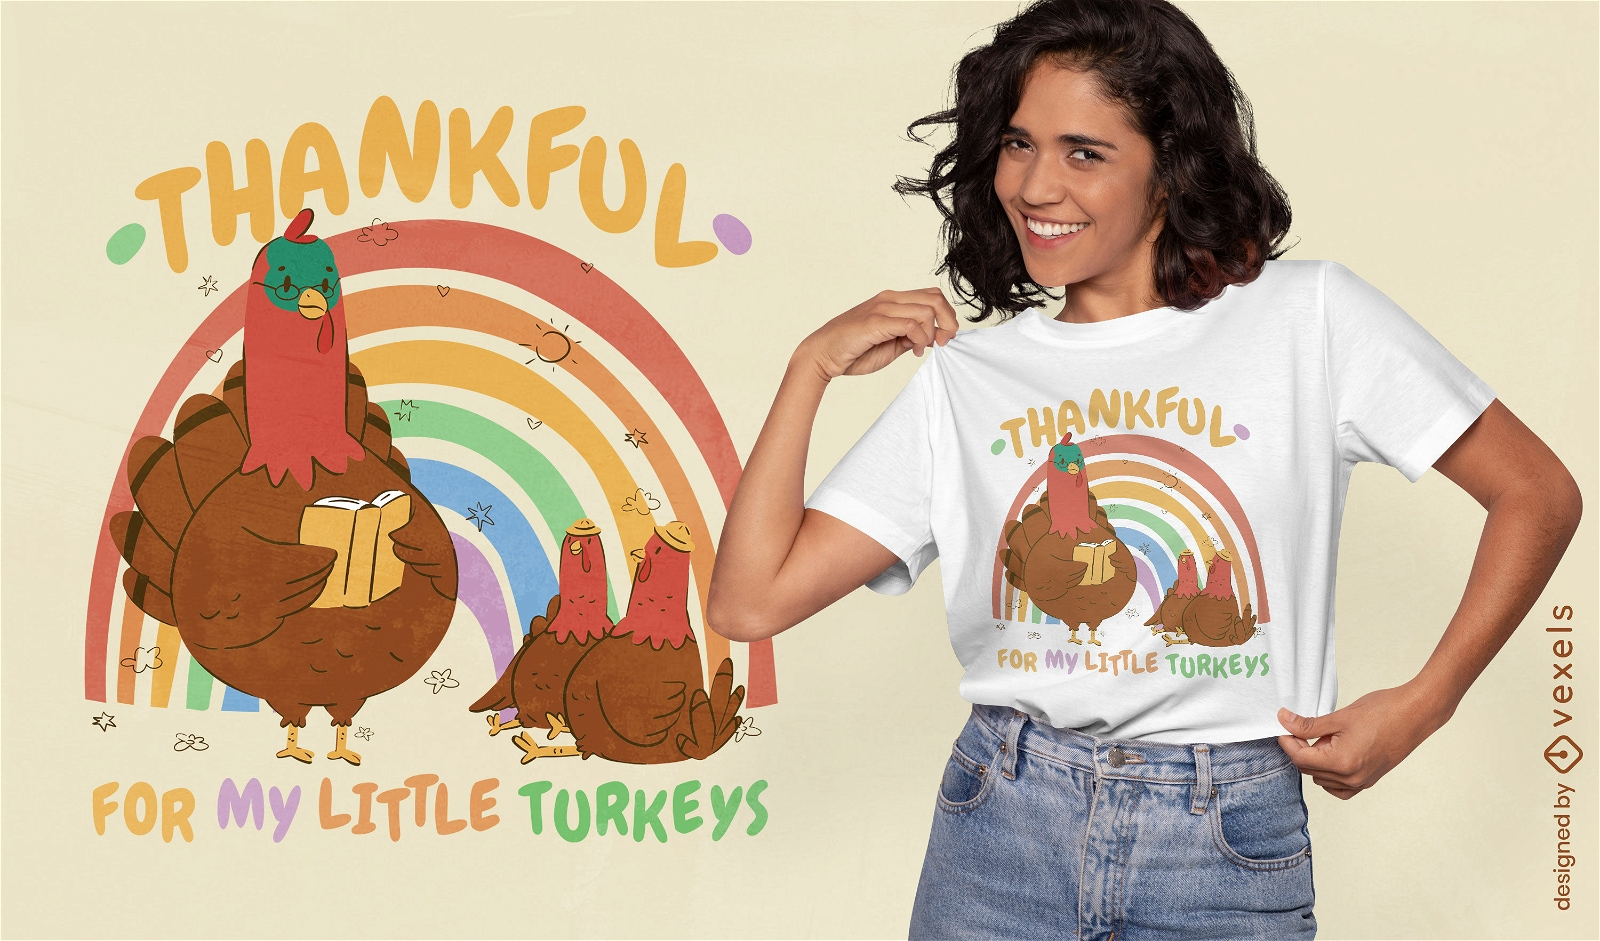 Little turkeys t-shirt design